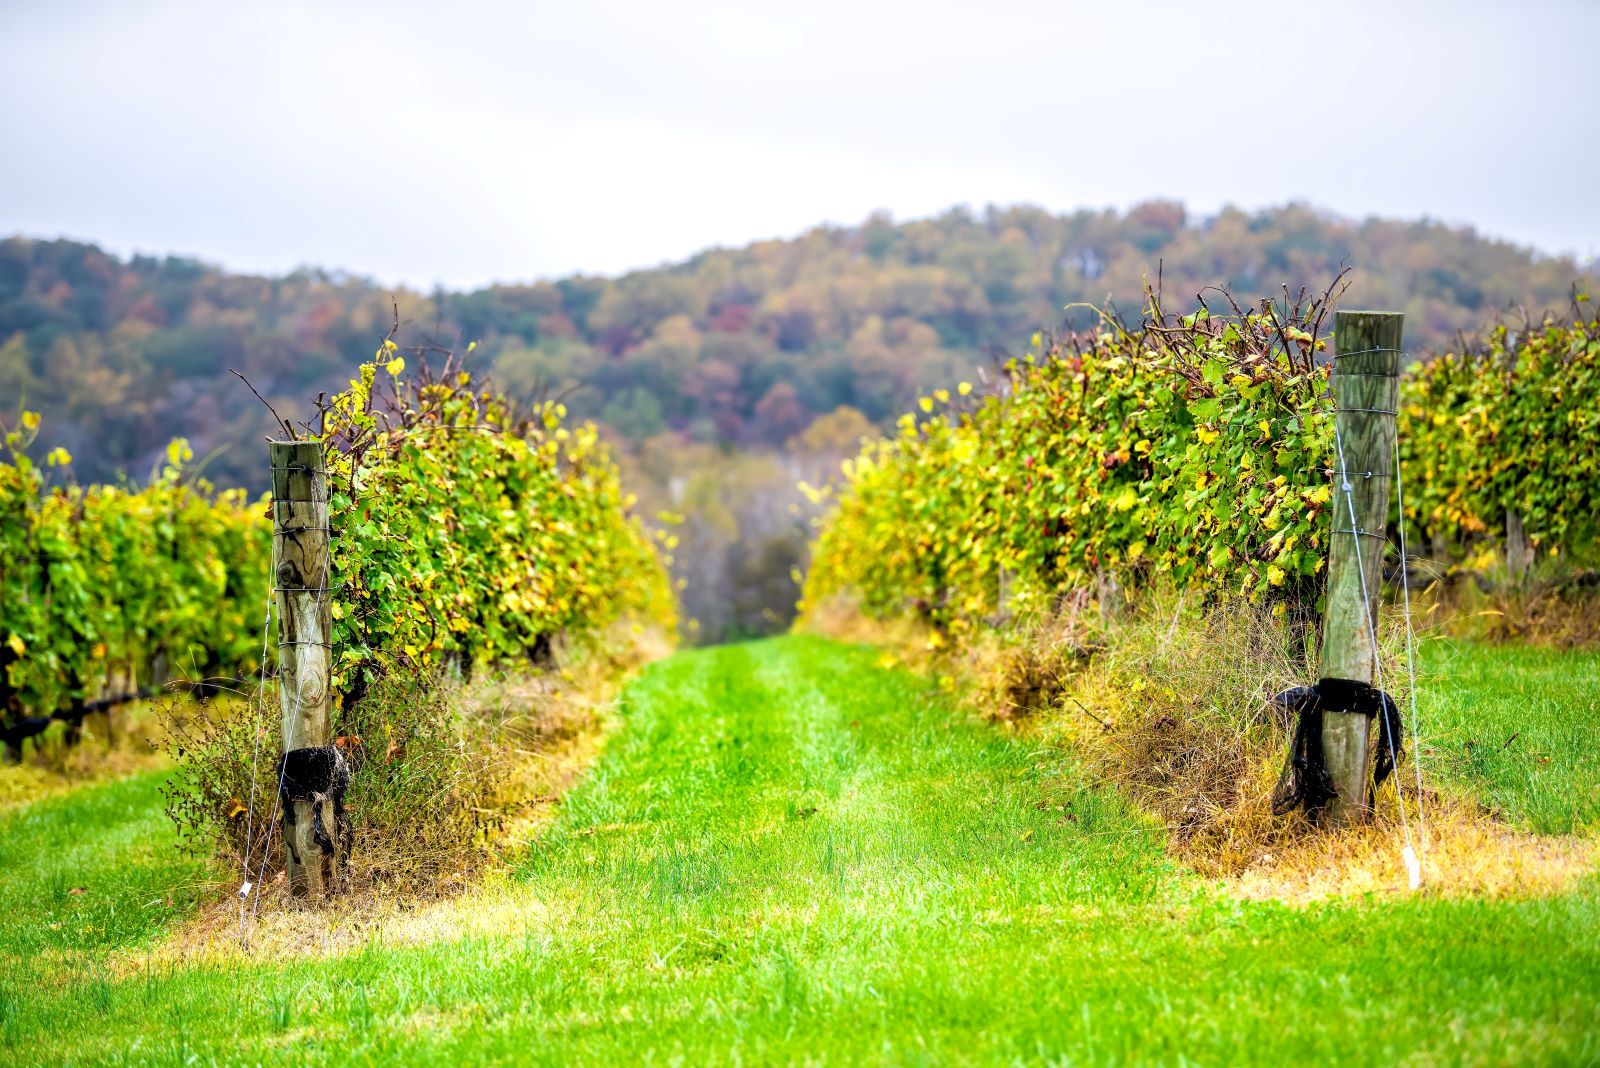 Blue Ridge winery in the Appalachian region of the U.S. 